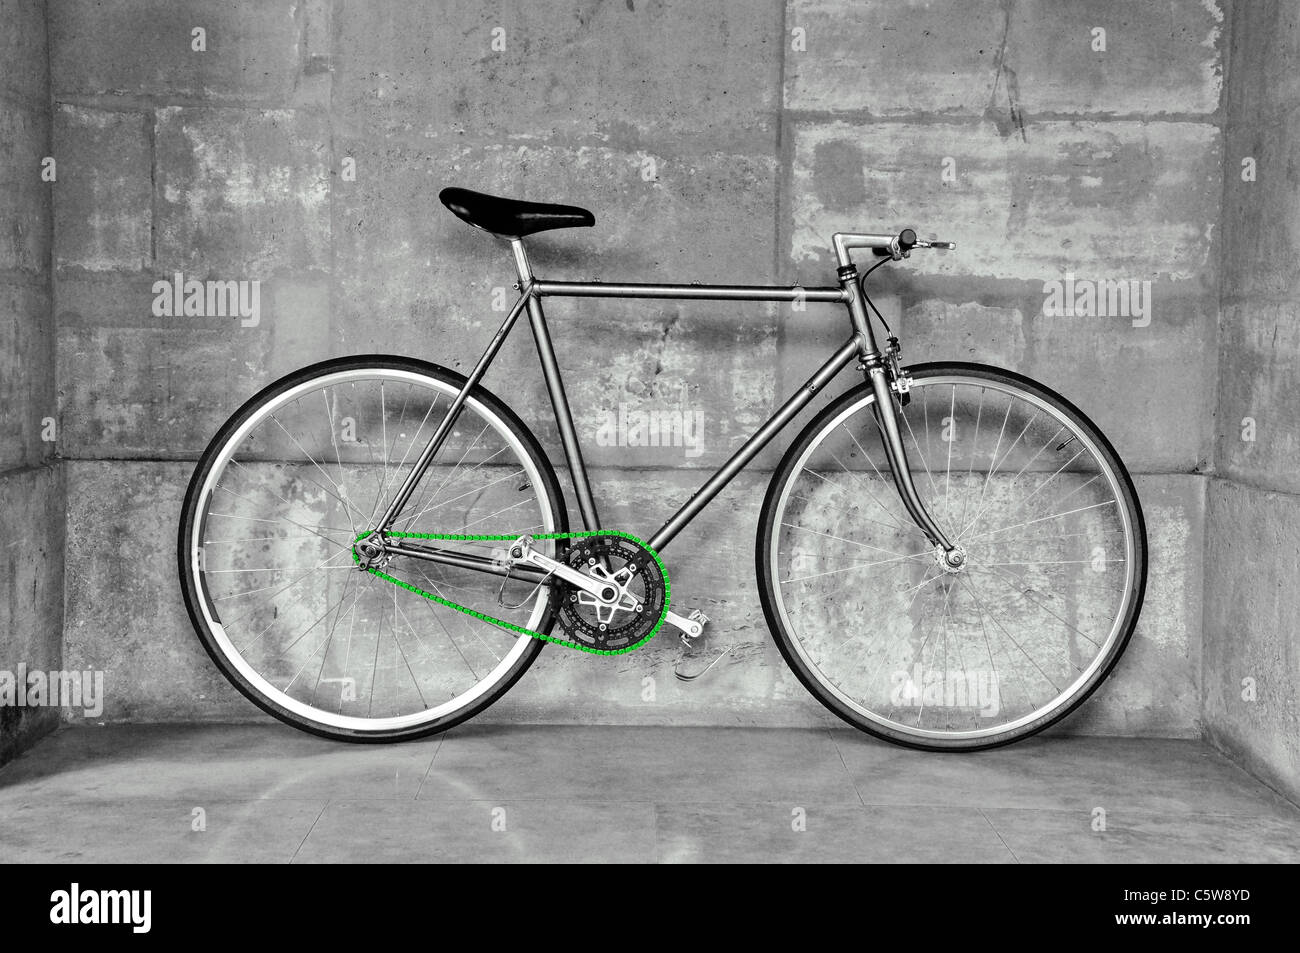 Un pignon fixe vélo, également appelé fixie, avec un concept de l'écologie, la chaîne verte Banque D'Images